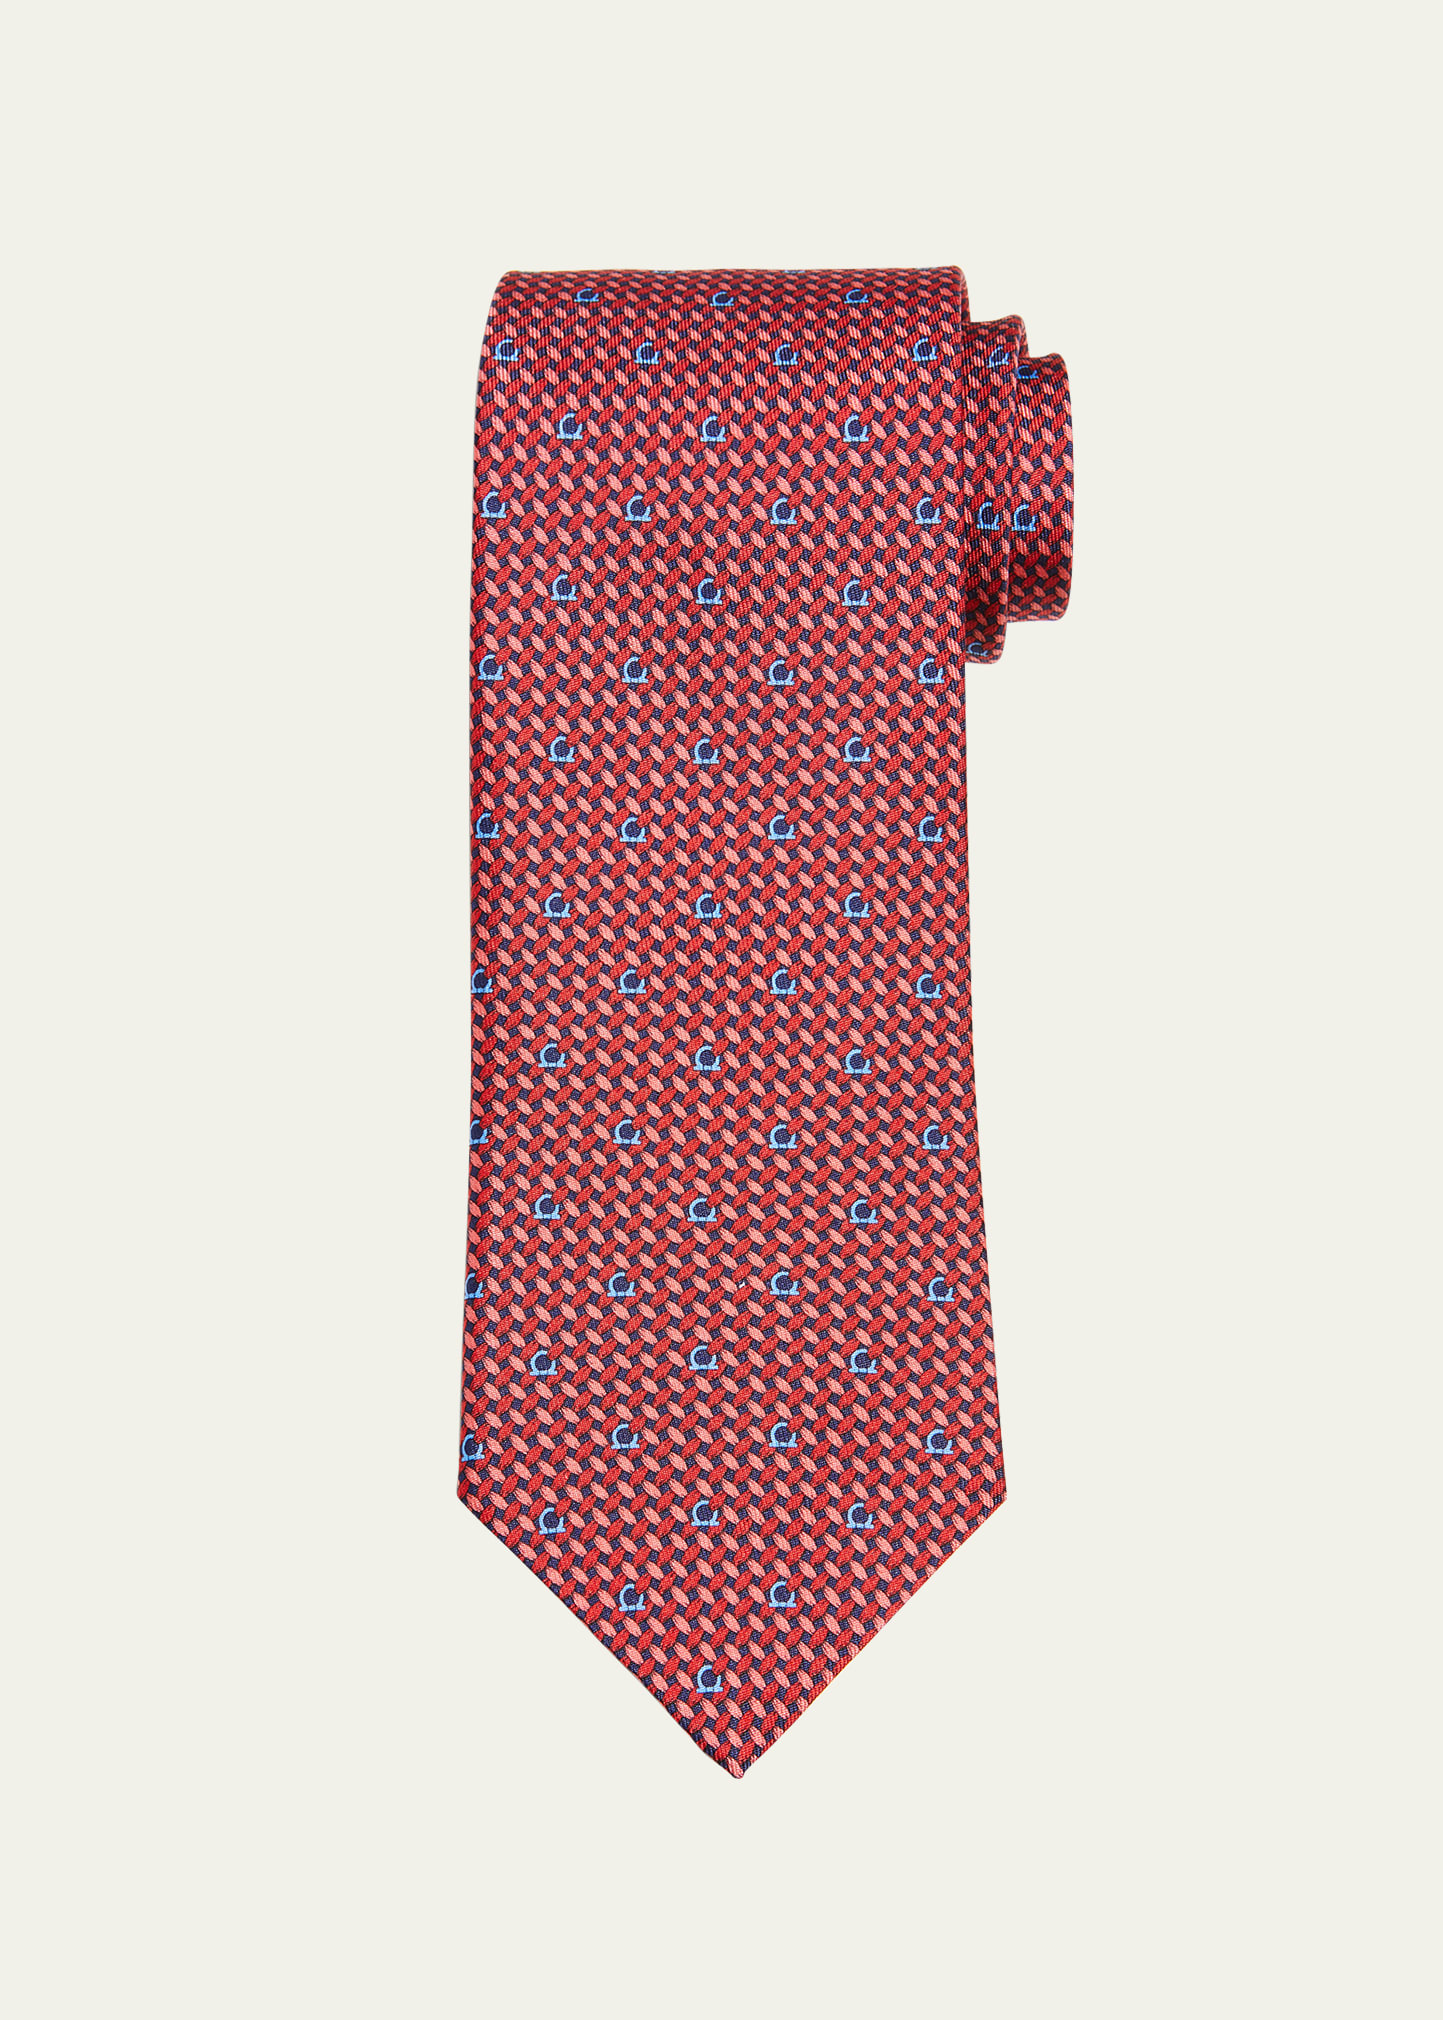 Ferragamo Men's Maglia Silk Tie In Fblurosso